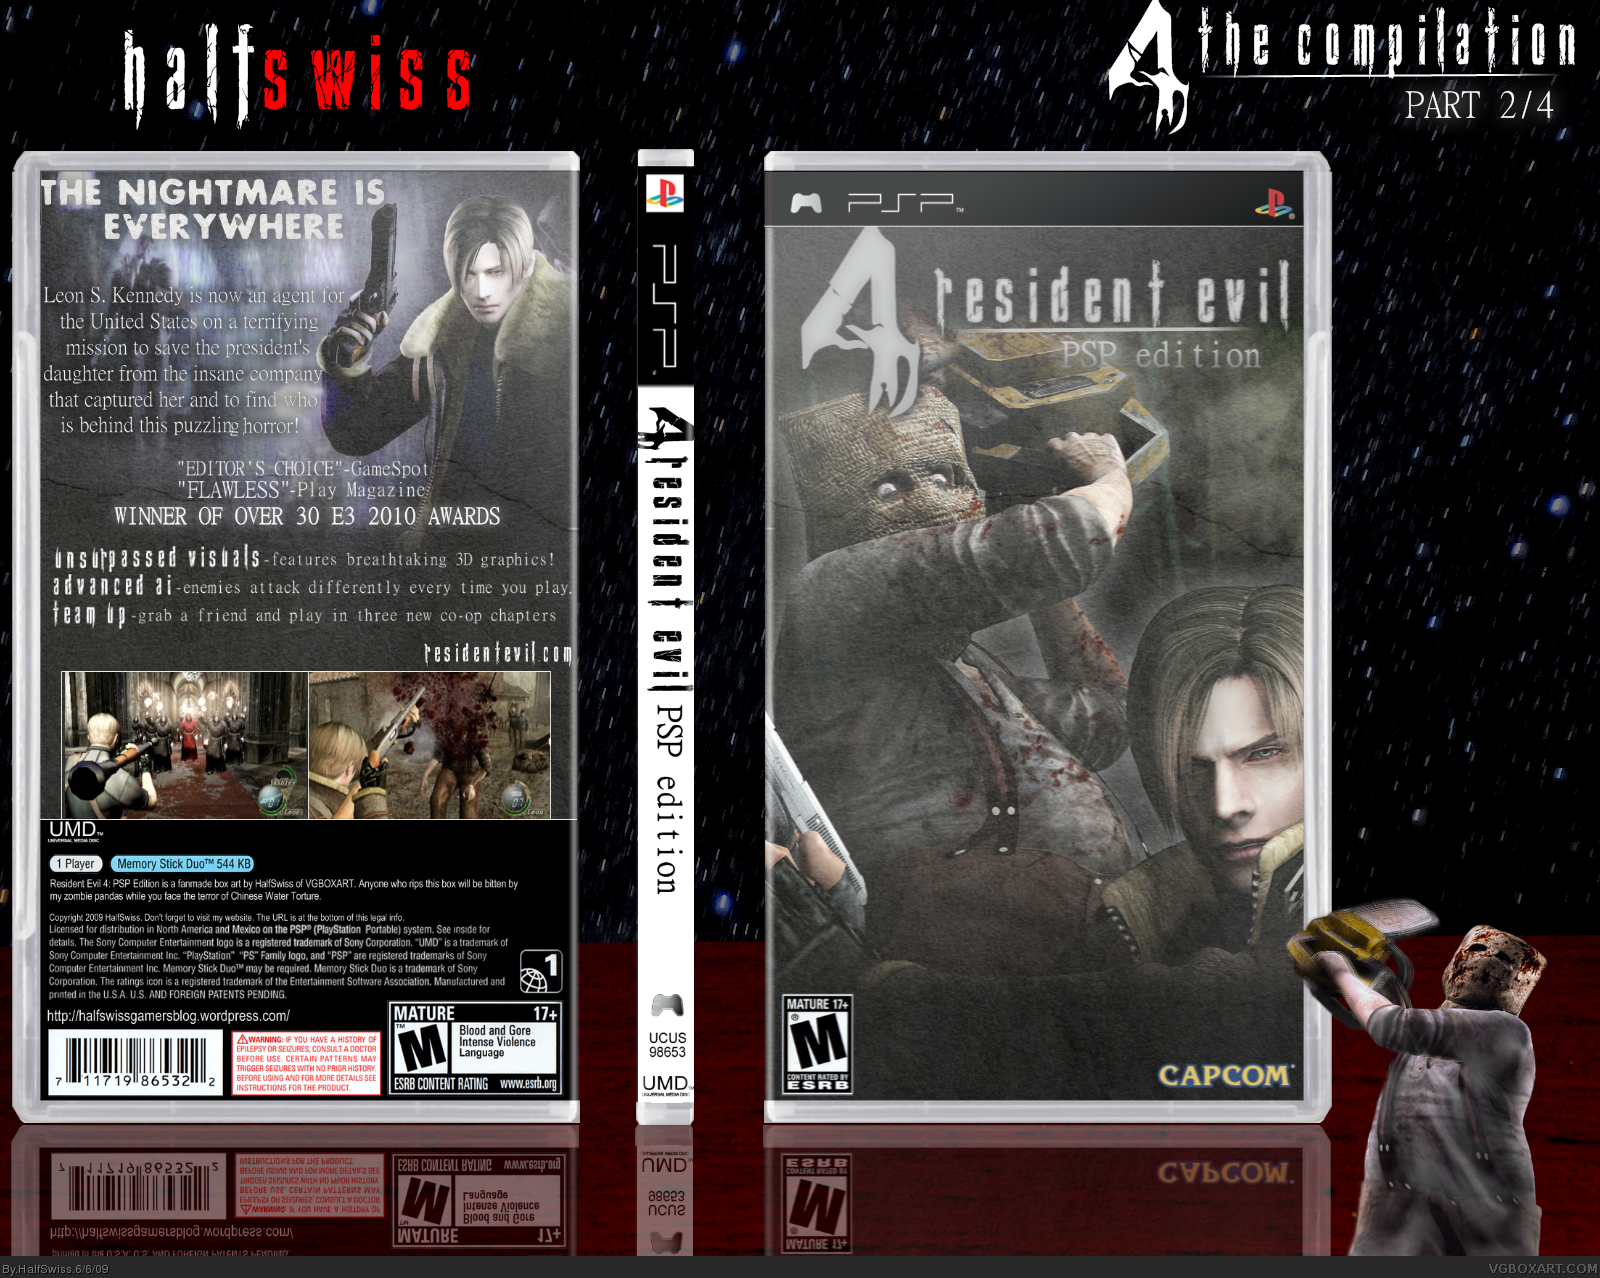 Resident Evil 4: PSP Edition box cover